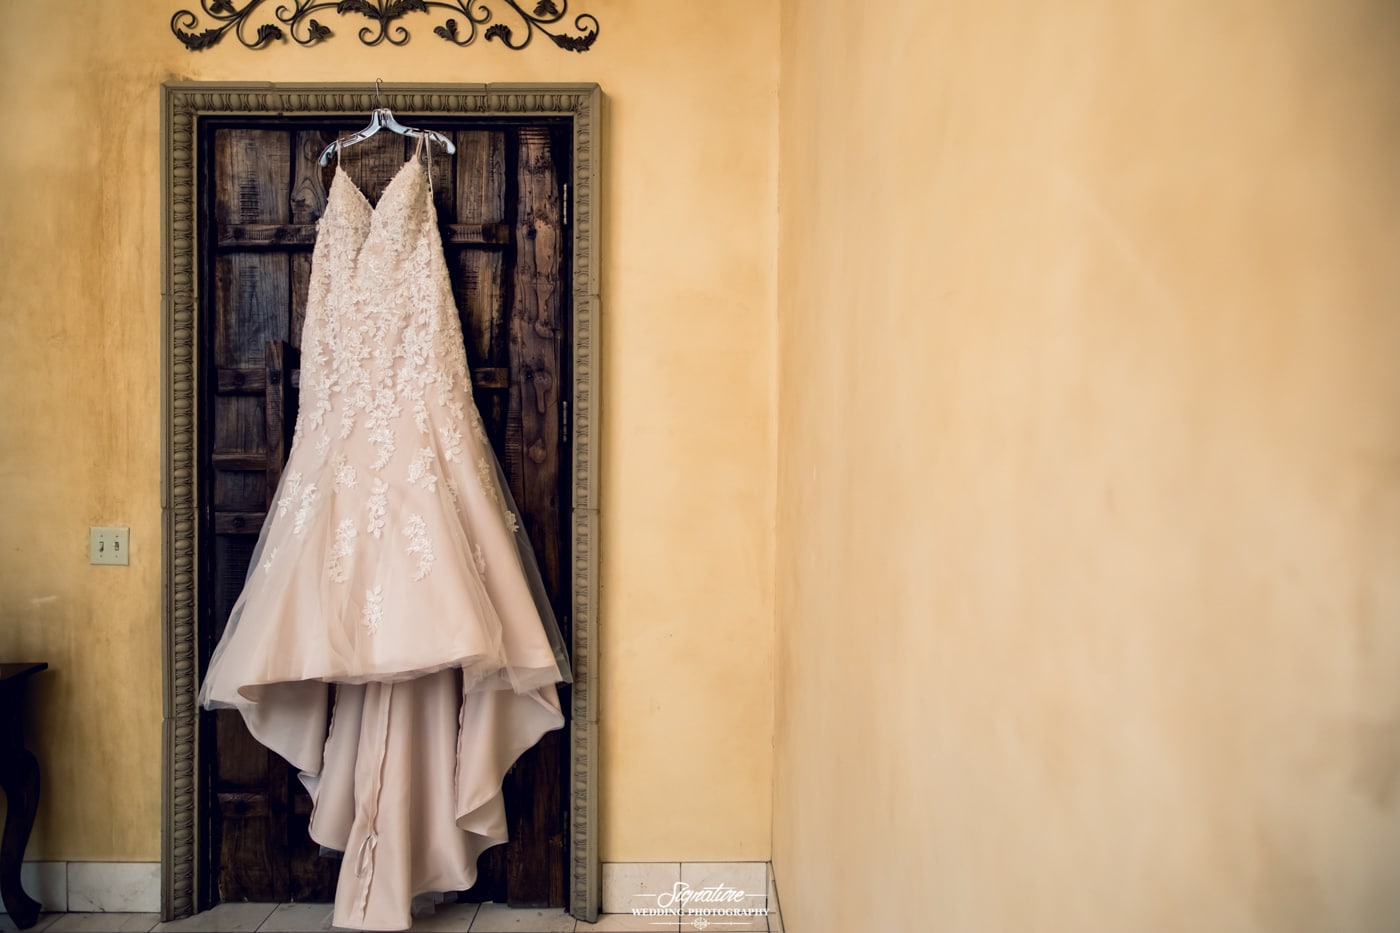 Bride's dress hanging in front of wooden door